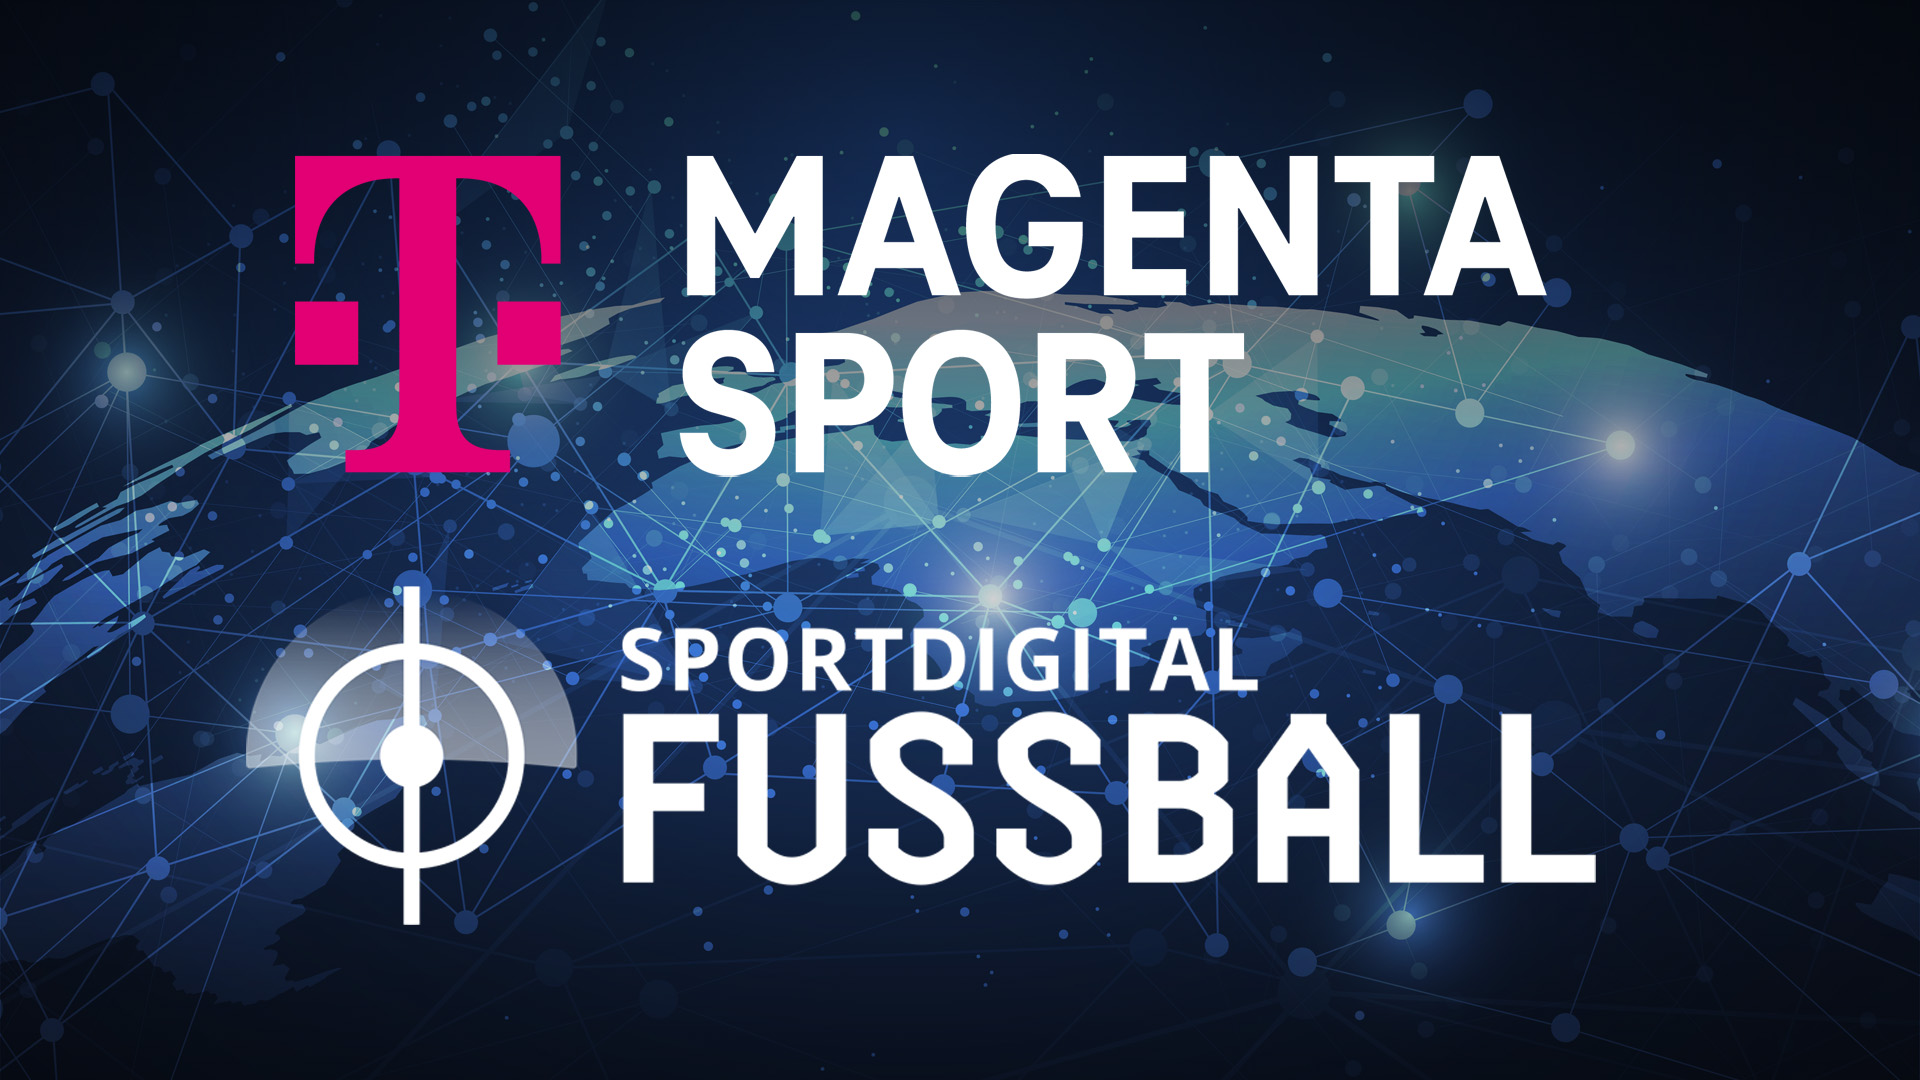 Sportdigital FUSSBALL jetzt auch bei MagentaSport – Internationaler Spitzenfußball live!